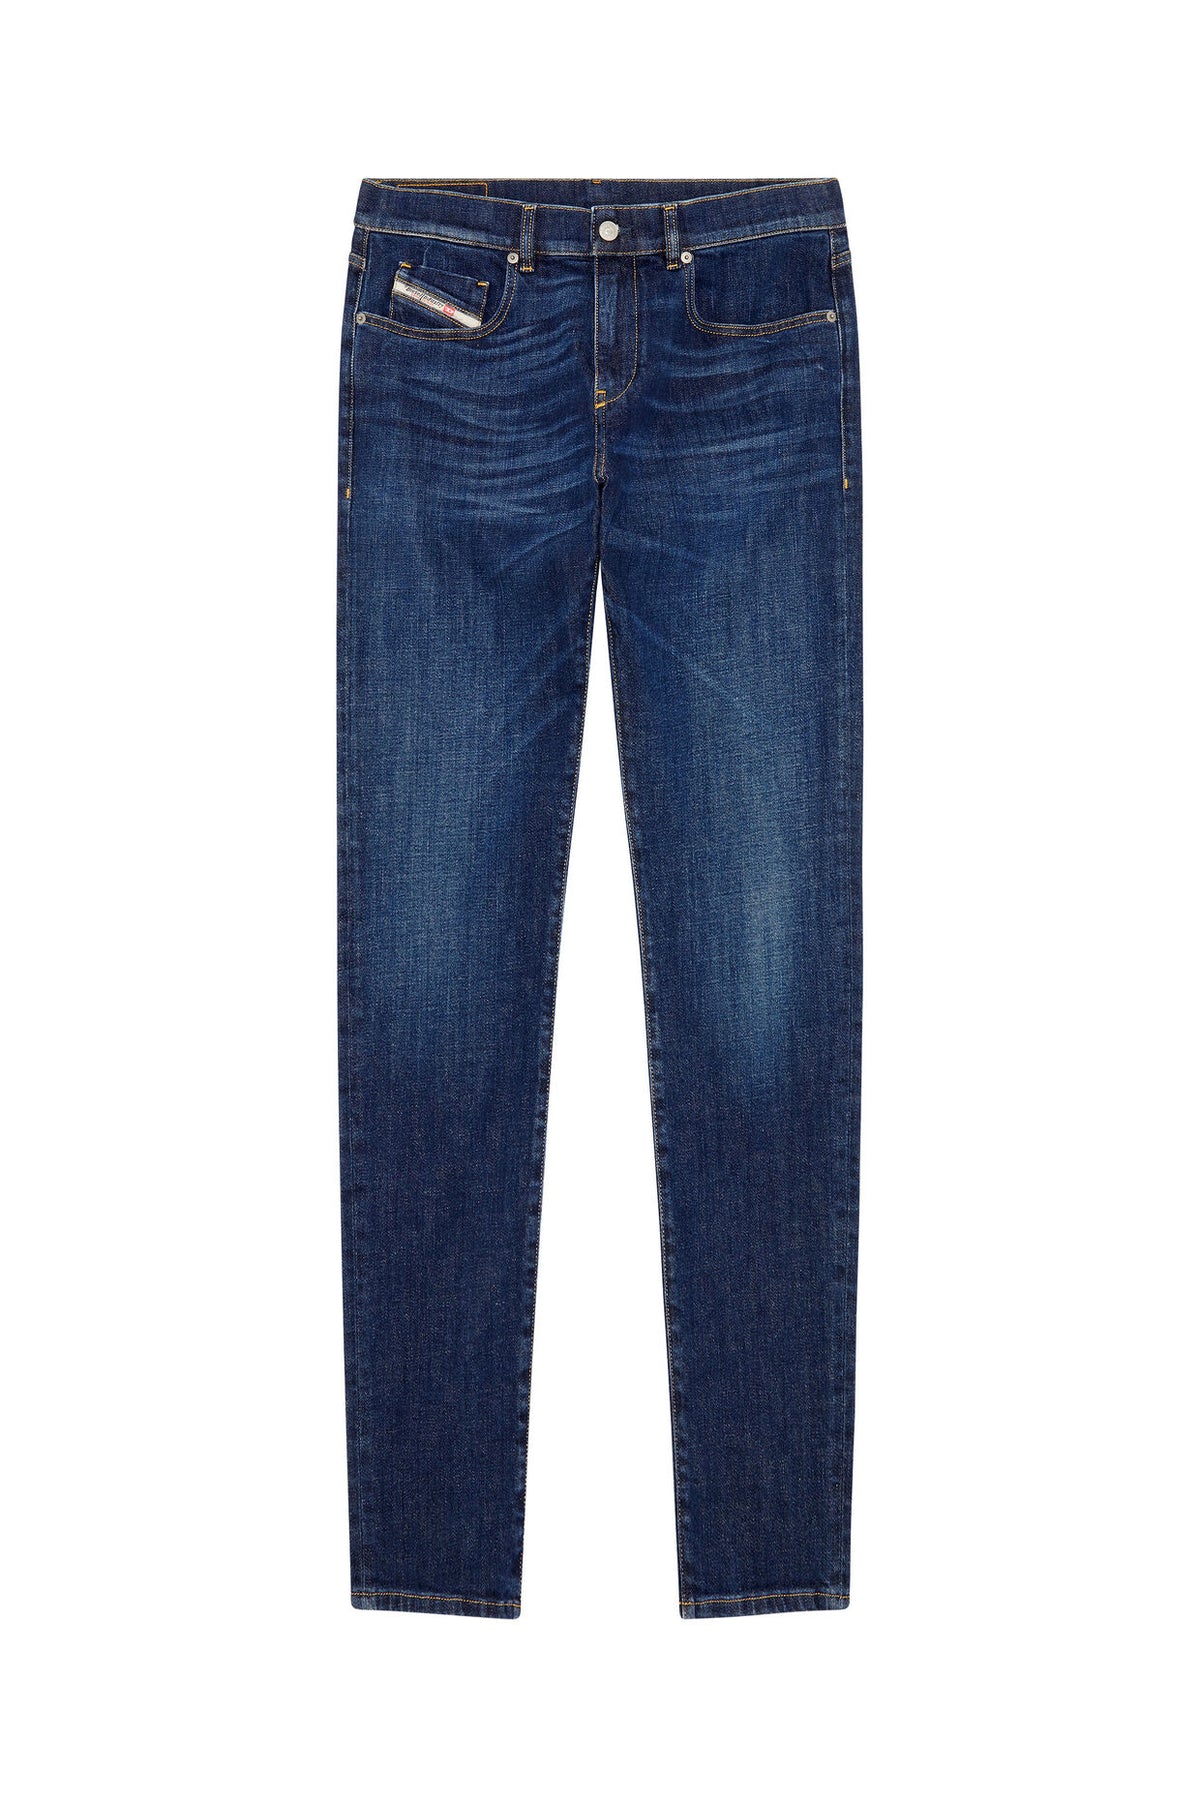 DIESEL Slim Jeans 2019 D-Strukt 09b90